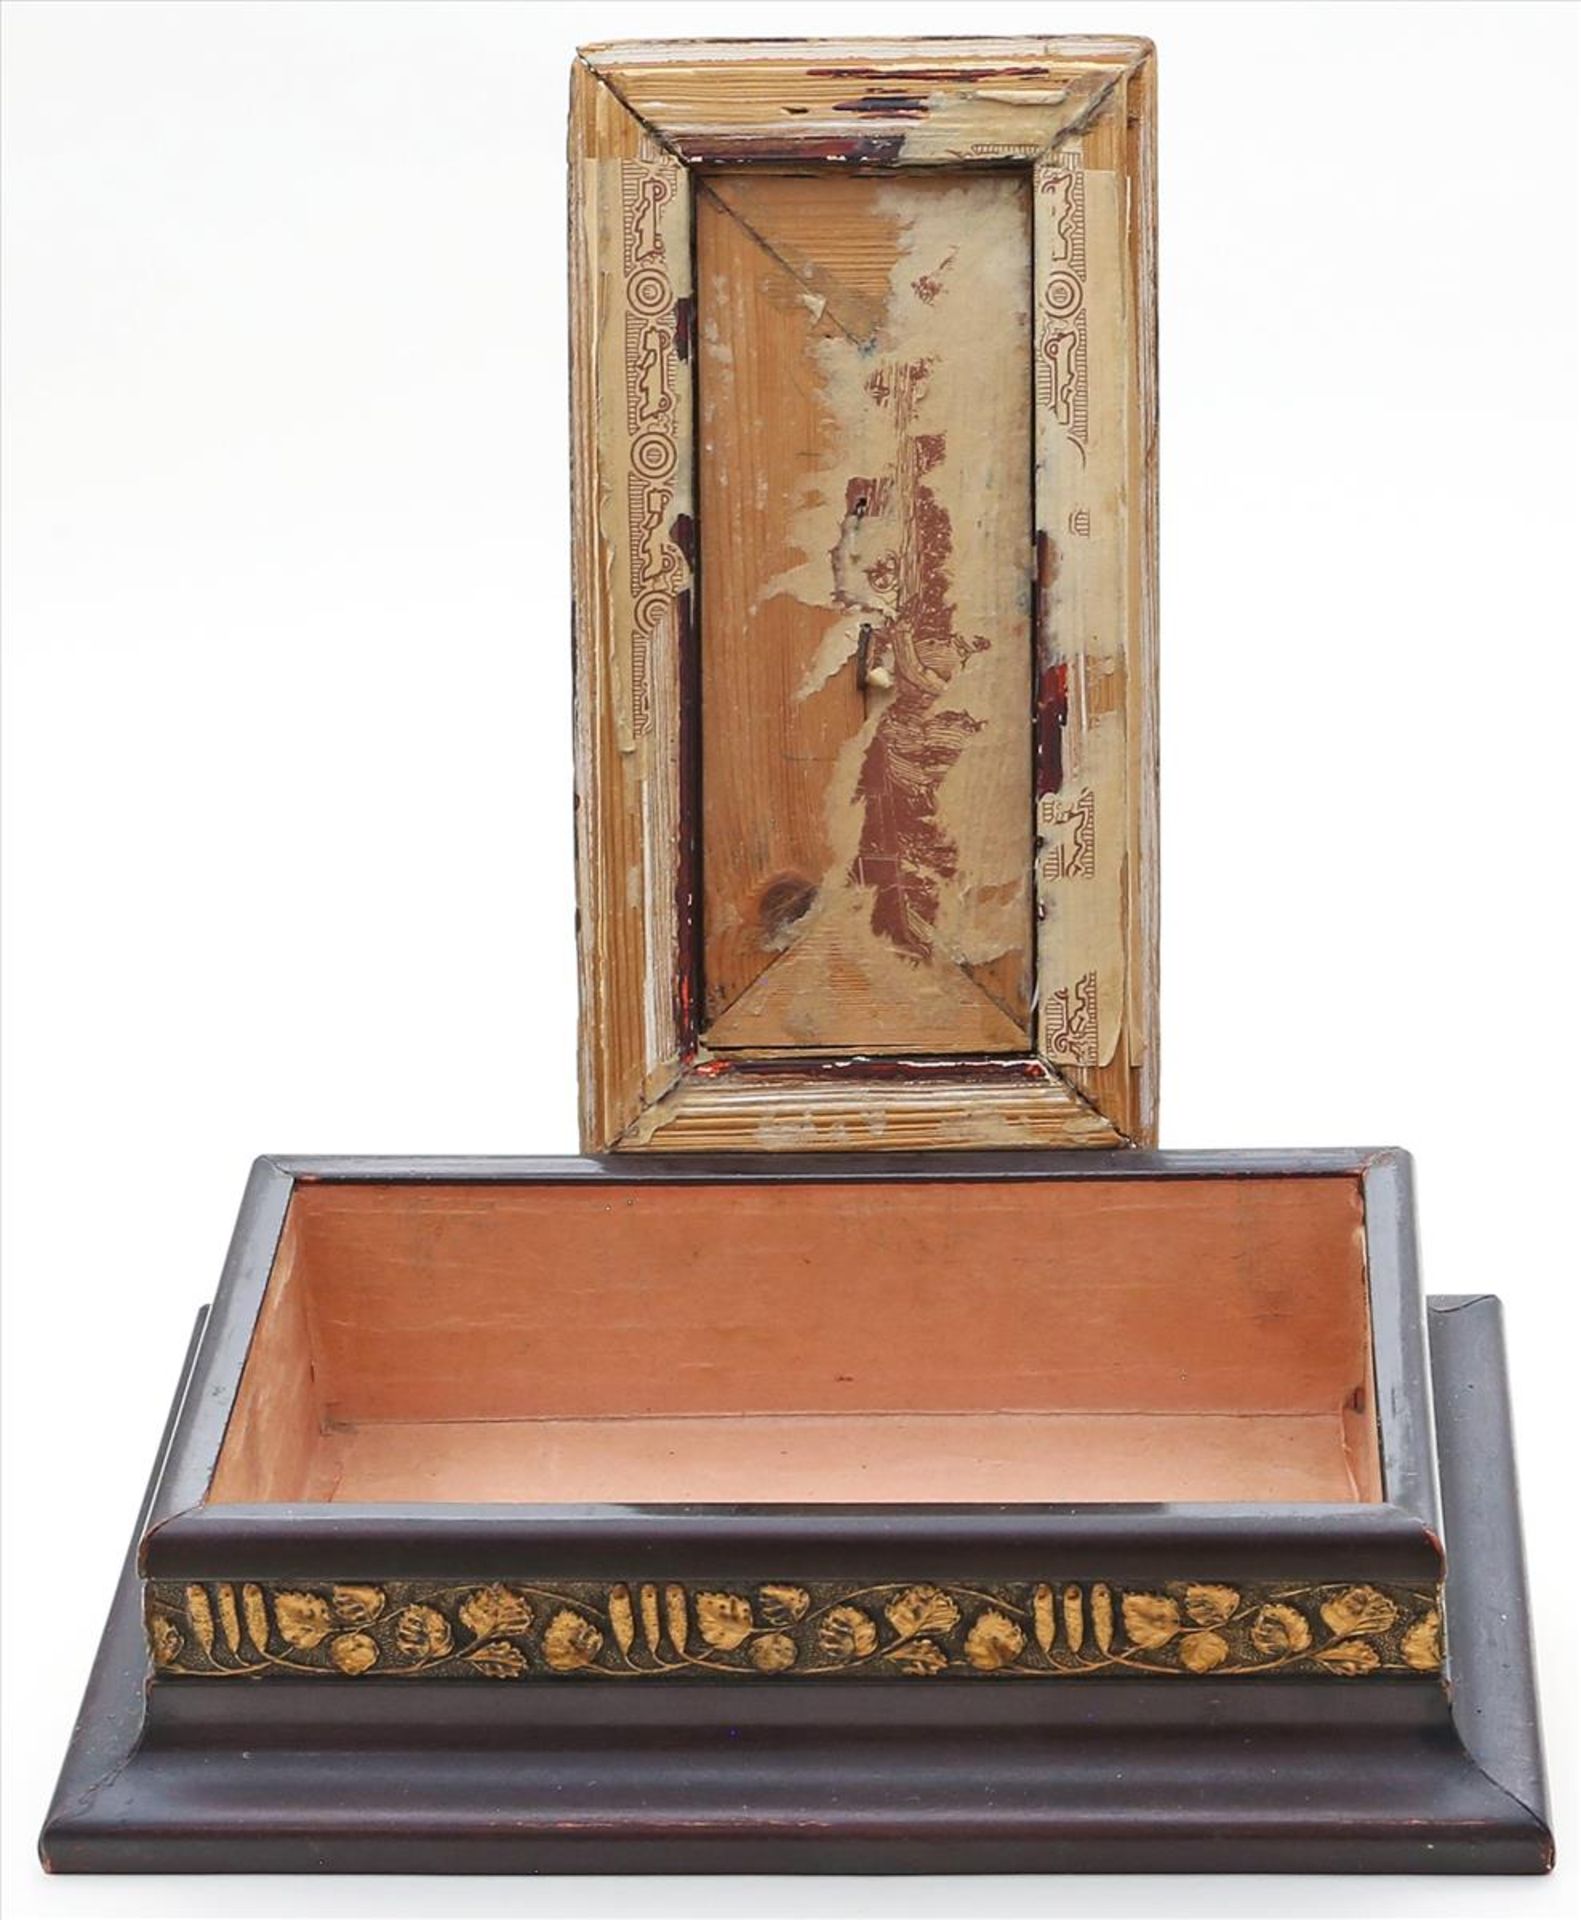 Schatulle.Holz, verschiedenfarbig gelackt. Reliefdekor. Gebrauchsspuren. Um 1900. 12x 27x 16,5 cm. - Bild 2 aus 2